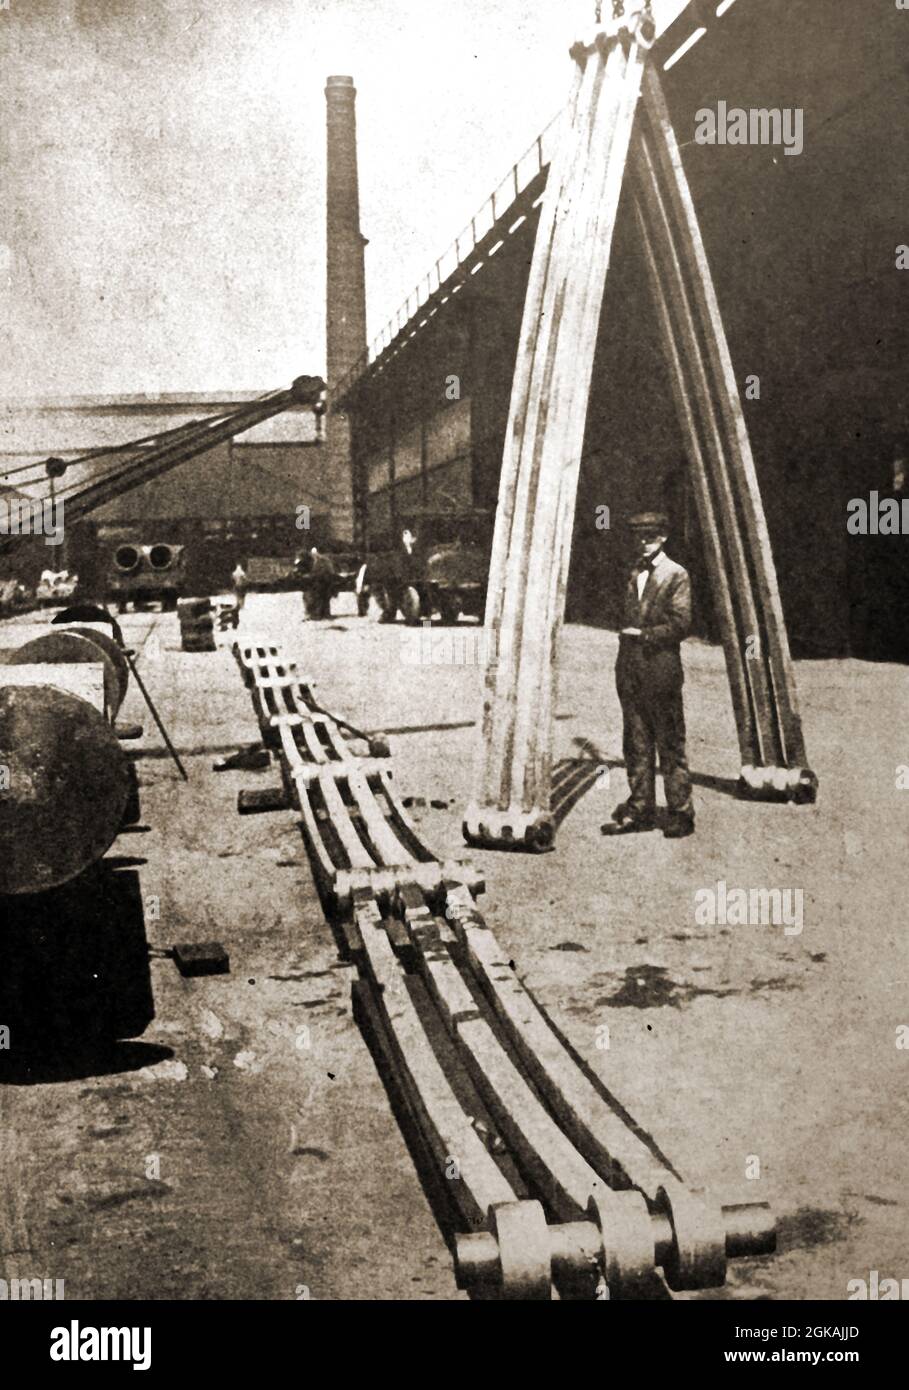 1939- des chaînes d'acier non rouillé étant prêtes à renforcer le dôme de la cathédrale Saint-Paul, Londres . (Conçu / construit par Christopher Wren) Banque D'Images